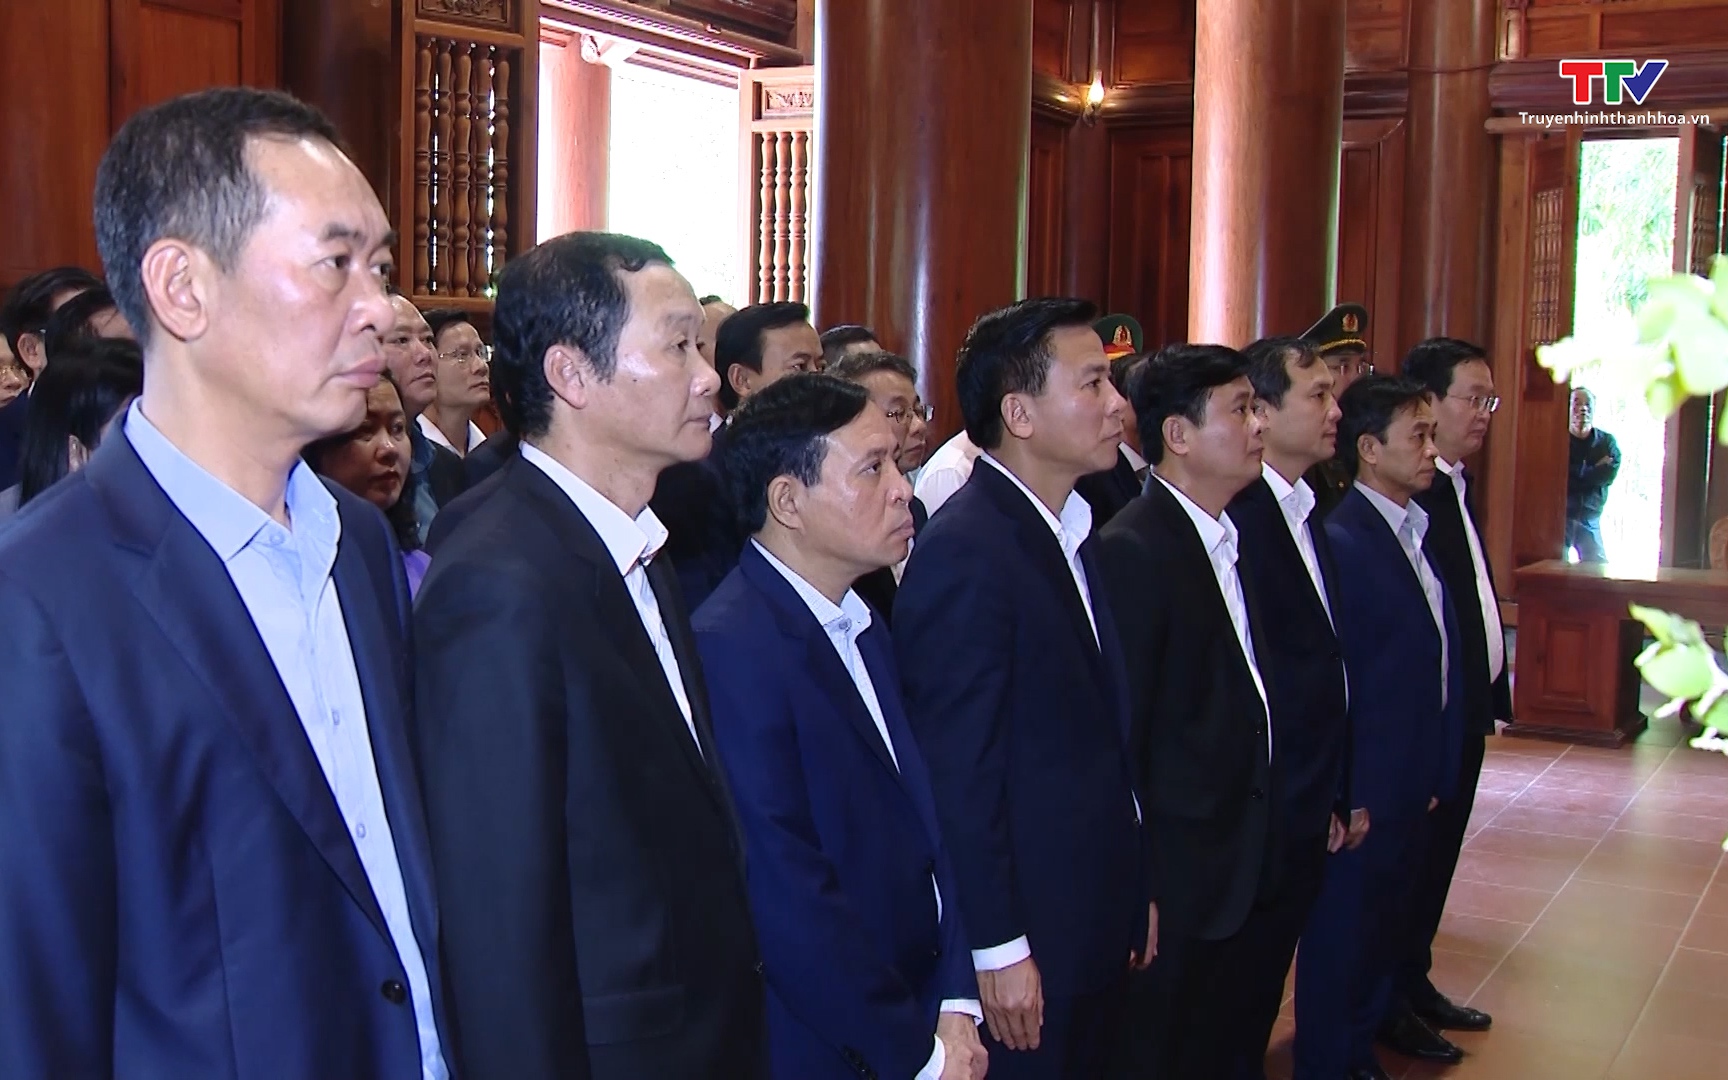 Đoàn đại biểu 3 tỉnh Thanh Hóa - Nghệ An - Hà Tĩnh dâng hương tưởng niệm Chủ tịch Hồ Chí Minh tại Khu di tích Quốc gia đặc biệt Kim Liên